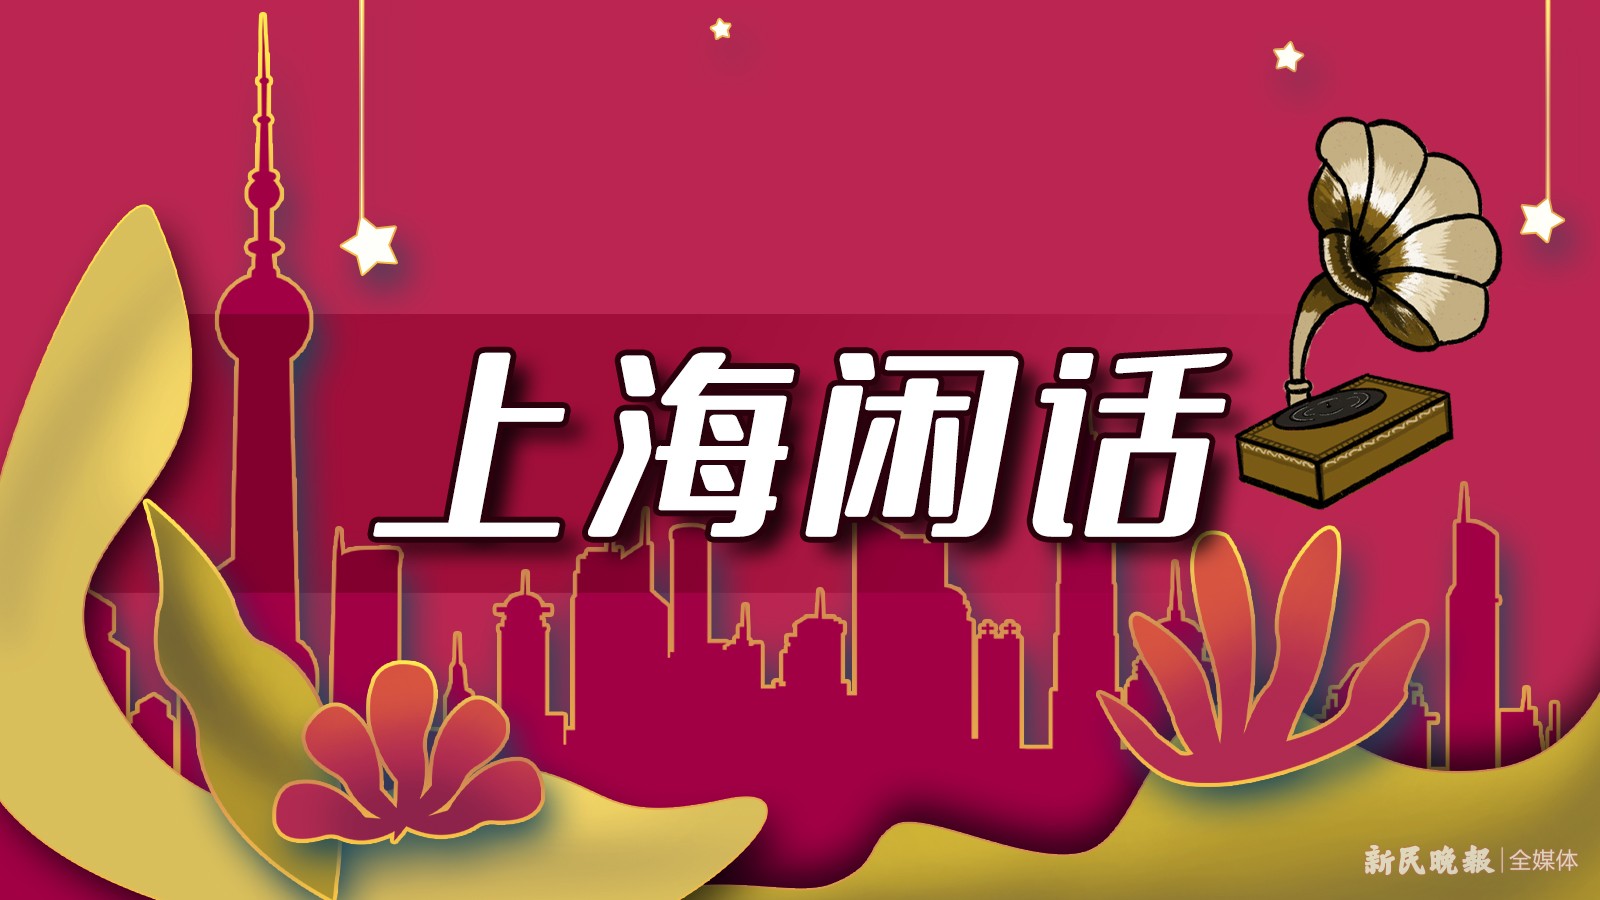 上海话音频丨花朝节你听过吗？赏花之外，还有什么好玩的？【我们的节日】